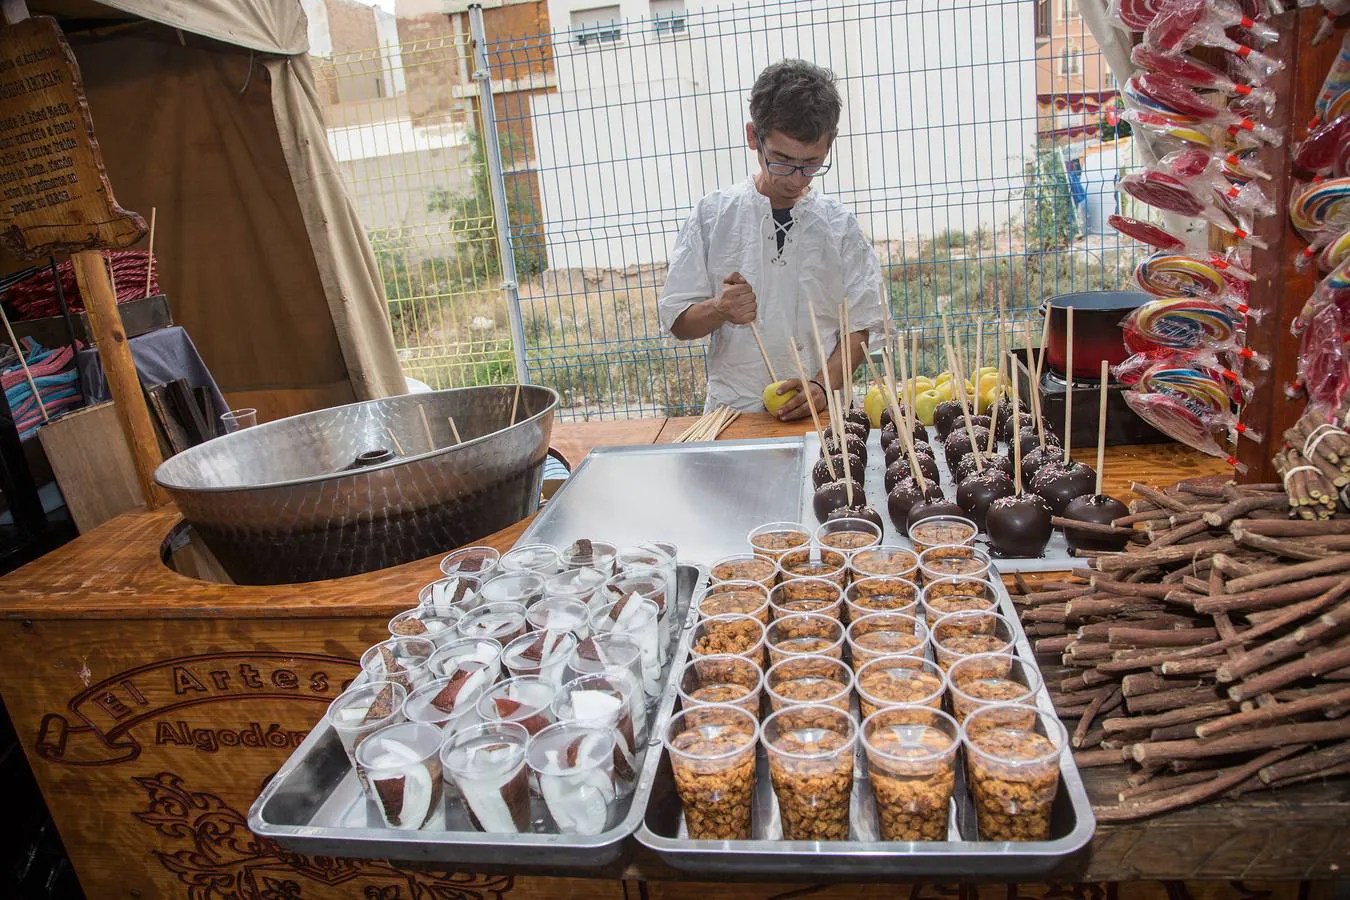 Más de un centenar de puestos artesanos y tabernas animan un Mercado Barroco cargado de actividades de tiempo libre